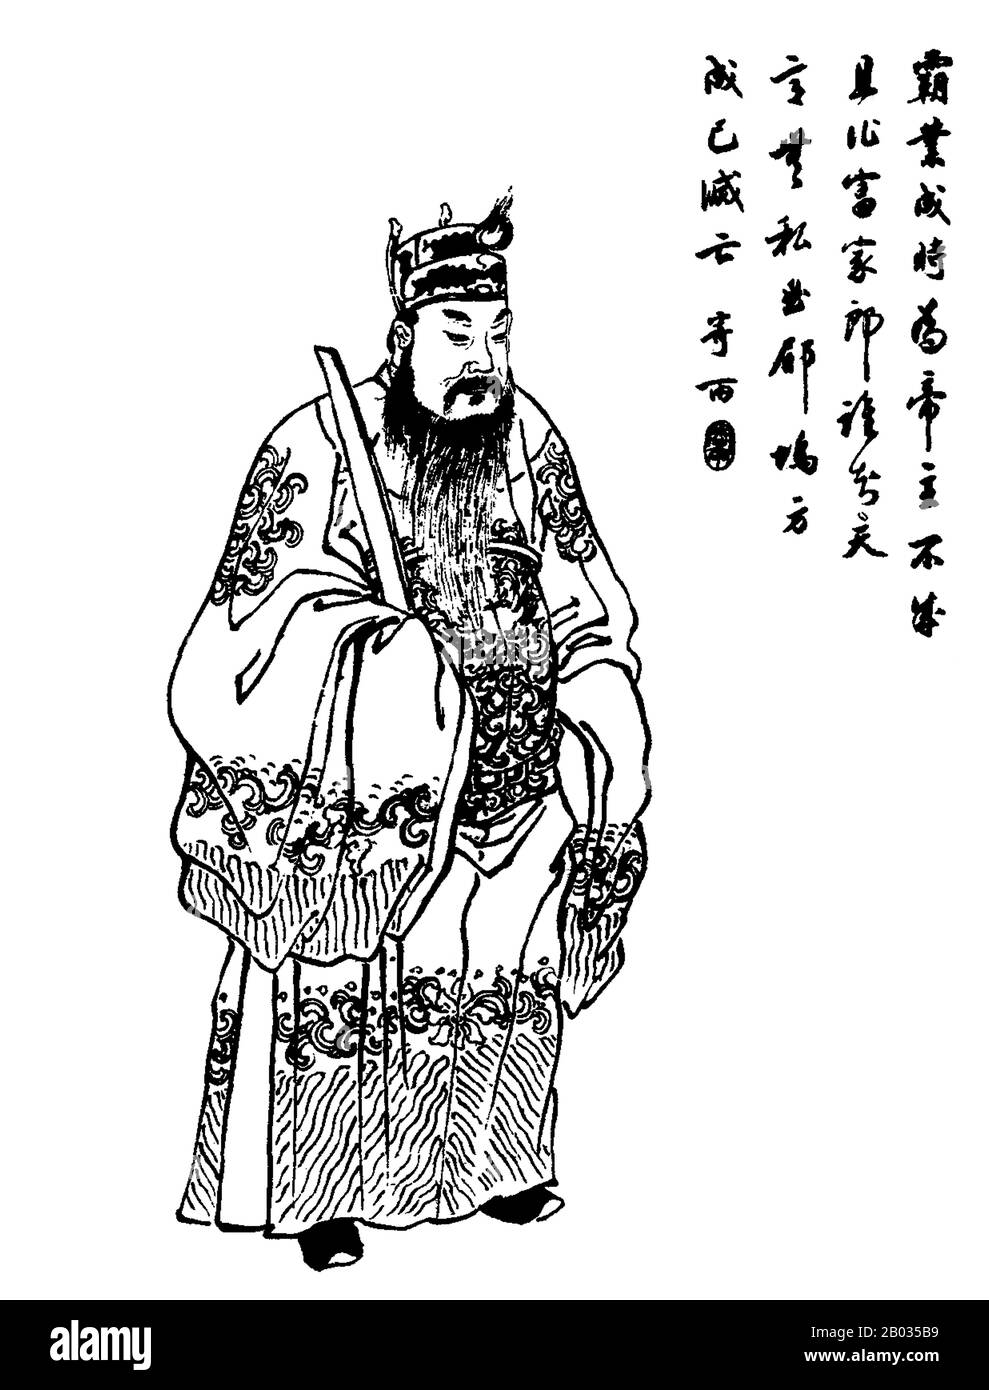 Dong Zhuo (-22 maggio 192 CE0), nome di cortesia Zhongying, era un Signore della dinastia Han del tardo Oriente. Dopo la morte dell'imperatore Ling nel 189 CE e uno scontro tra funzionari di corte e una fazione di eunuchi nel palazzo, Dong Zhuo approfittò del caos per prendere il controllo della capitale Luoyang. Successivamente depose l'imperatore Shao e instò invece il fratello dell'imperatore, l'imperatore Xian. Un sovrano eccessivamente crudele e tirannico, Dong Zhuo divenne grande potenza nella corte imperiale Han, controllando l'imperatore Xian per un breve periodo di tempo. Una coalizione di signori della guerra regionali e funzionari uniti Foto Stock